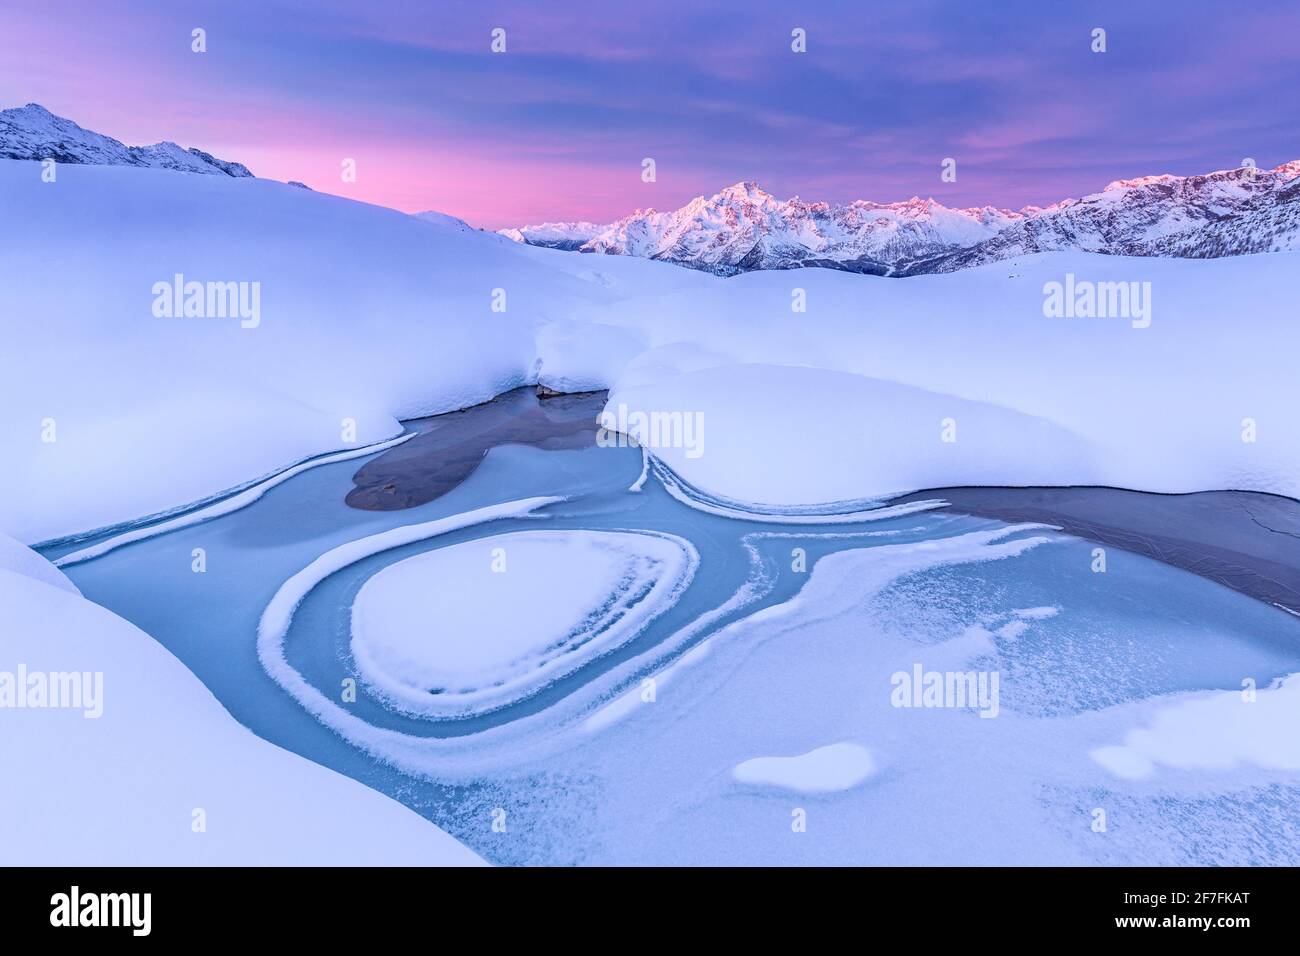 Verrückte Form in einem gefrorenen alpinen See bei Sonnenaufgang mit Blick auf den Mount Disgrazia, Valmalenco, Valtellina, Lombardei, Italien, Europa Stockfoto